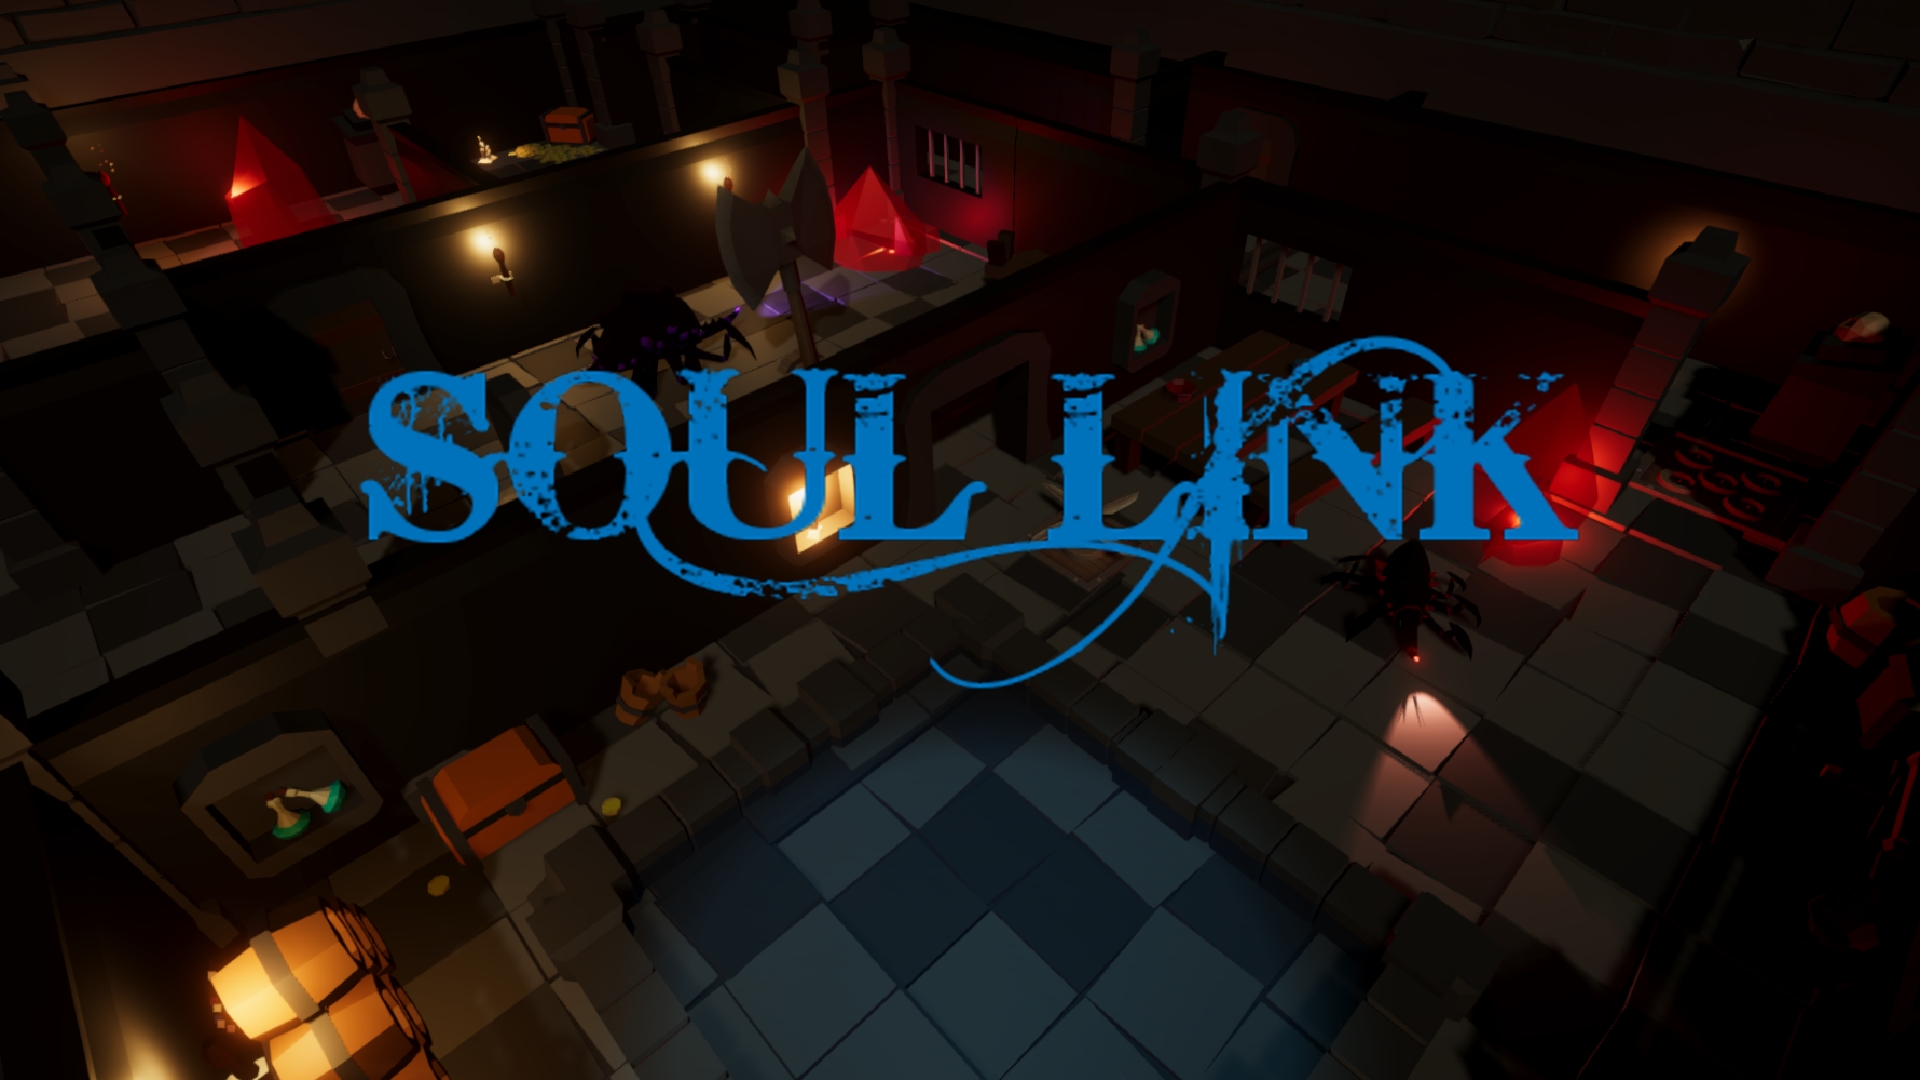 Soul Link